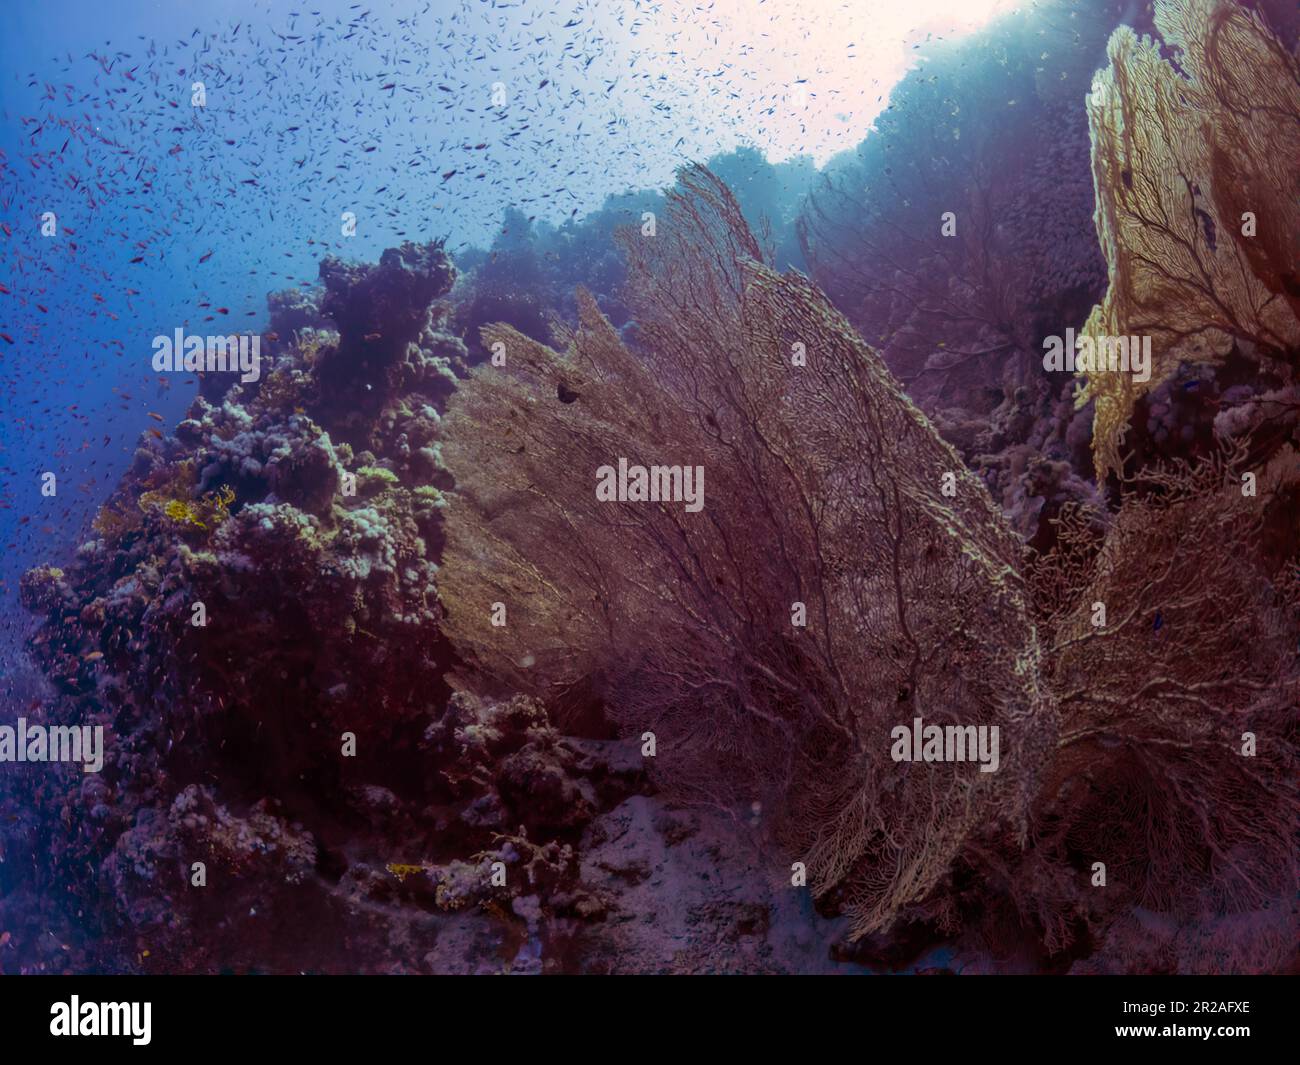 Ventilateurs géants de la mer gorgonienne (Subergorgia hicksoni) dans la mer Rouge, Égypte Banque D'Images